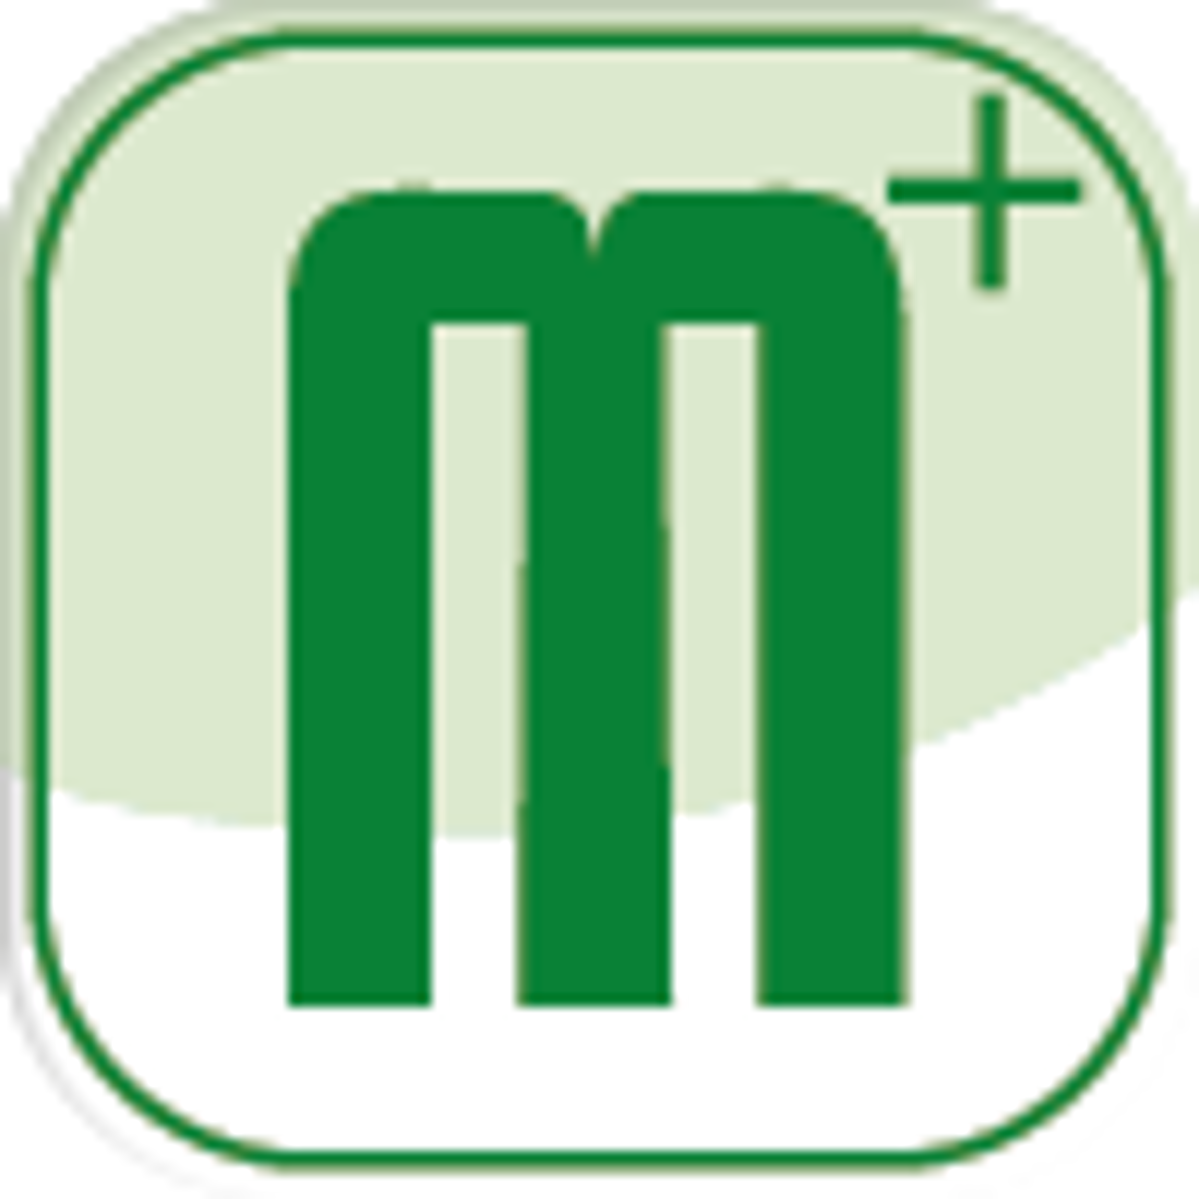 Das Logo von "Maerkerplus", ein hellgrünes Quadrat mit einem dunkelgrünen "m+" darauf.